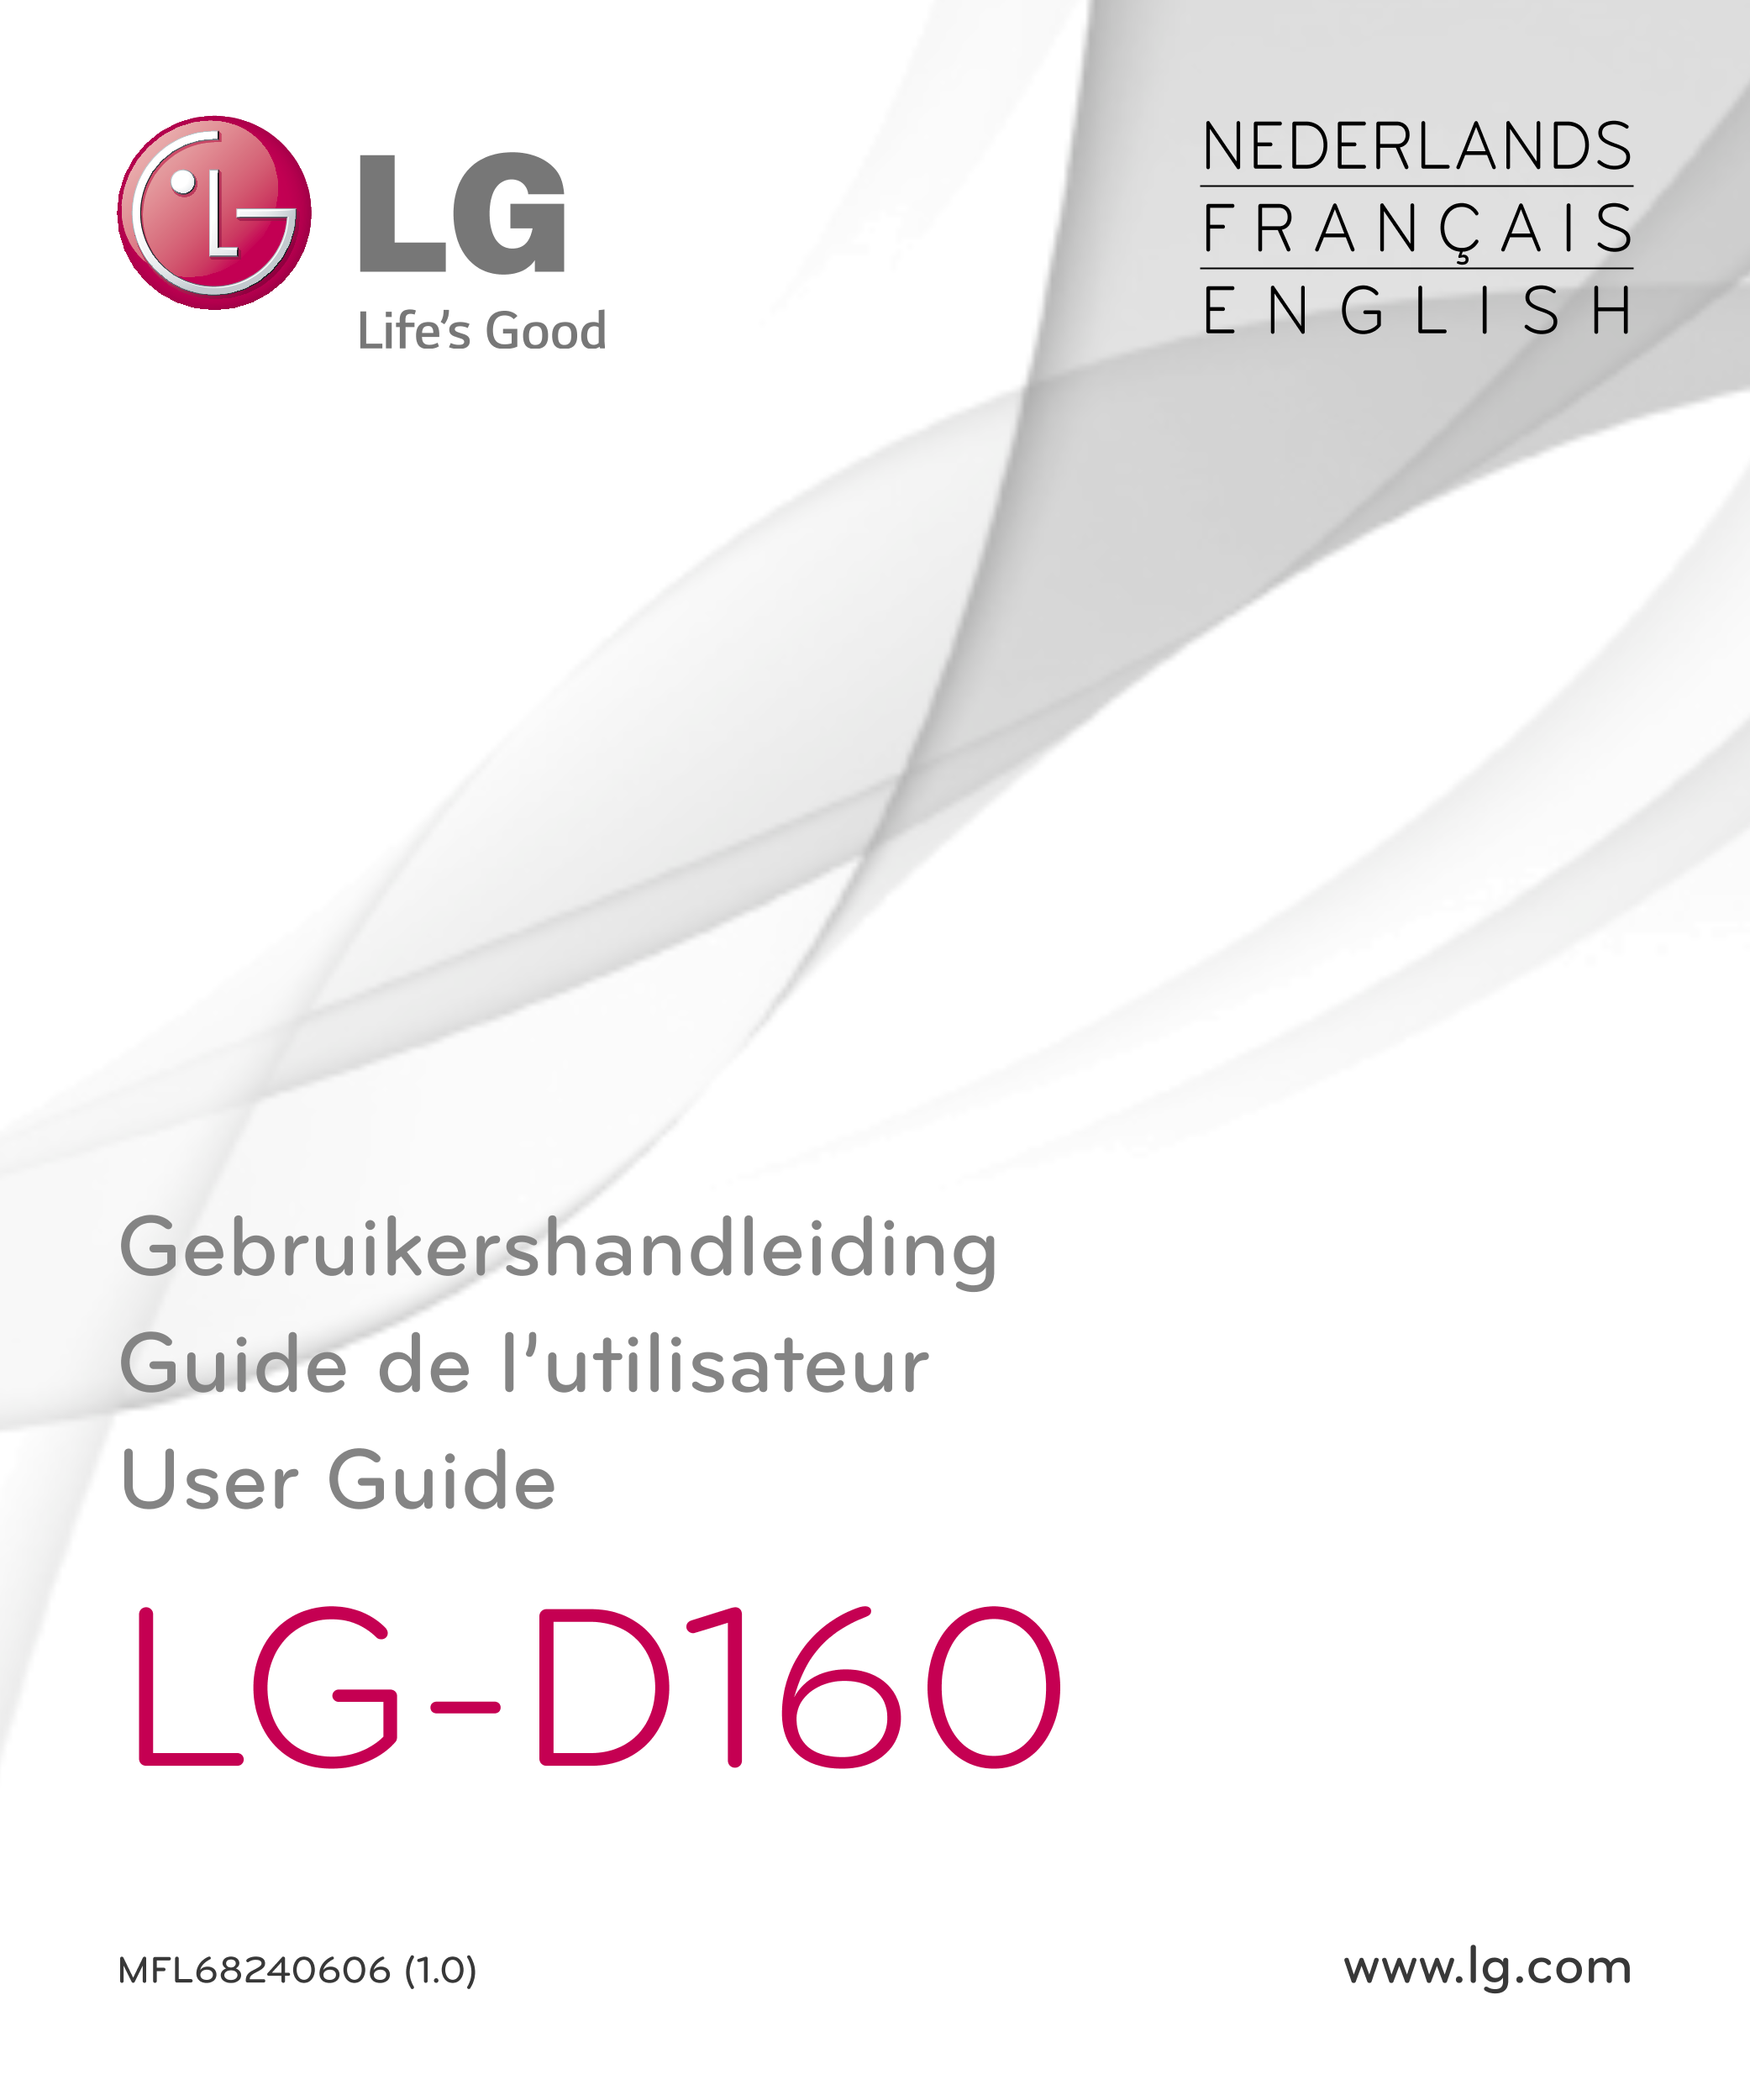 NEDERLANDS
F R A N Ç A I S
E N G L I S H
Gebruikershandleiding
Guide de l’utilisateur
User Guide
LG-D160
MFL68240606 (1.0) www.l